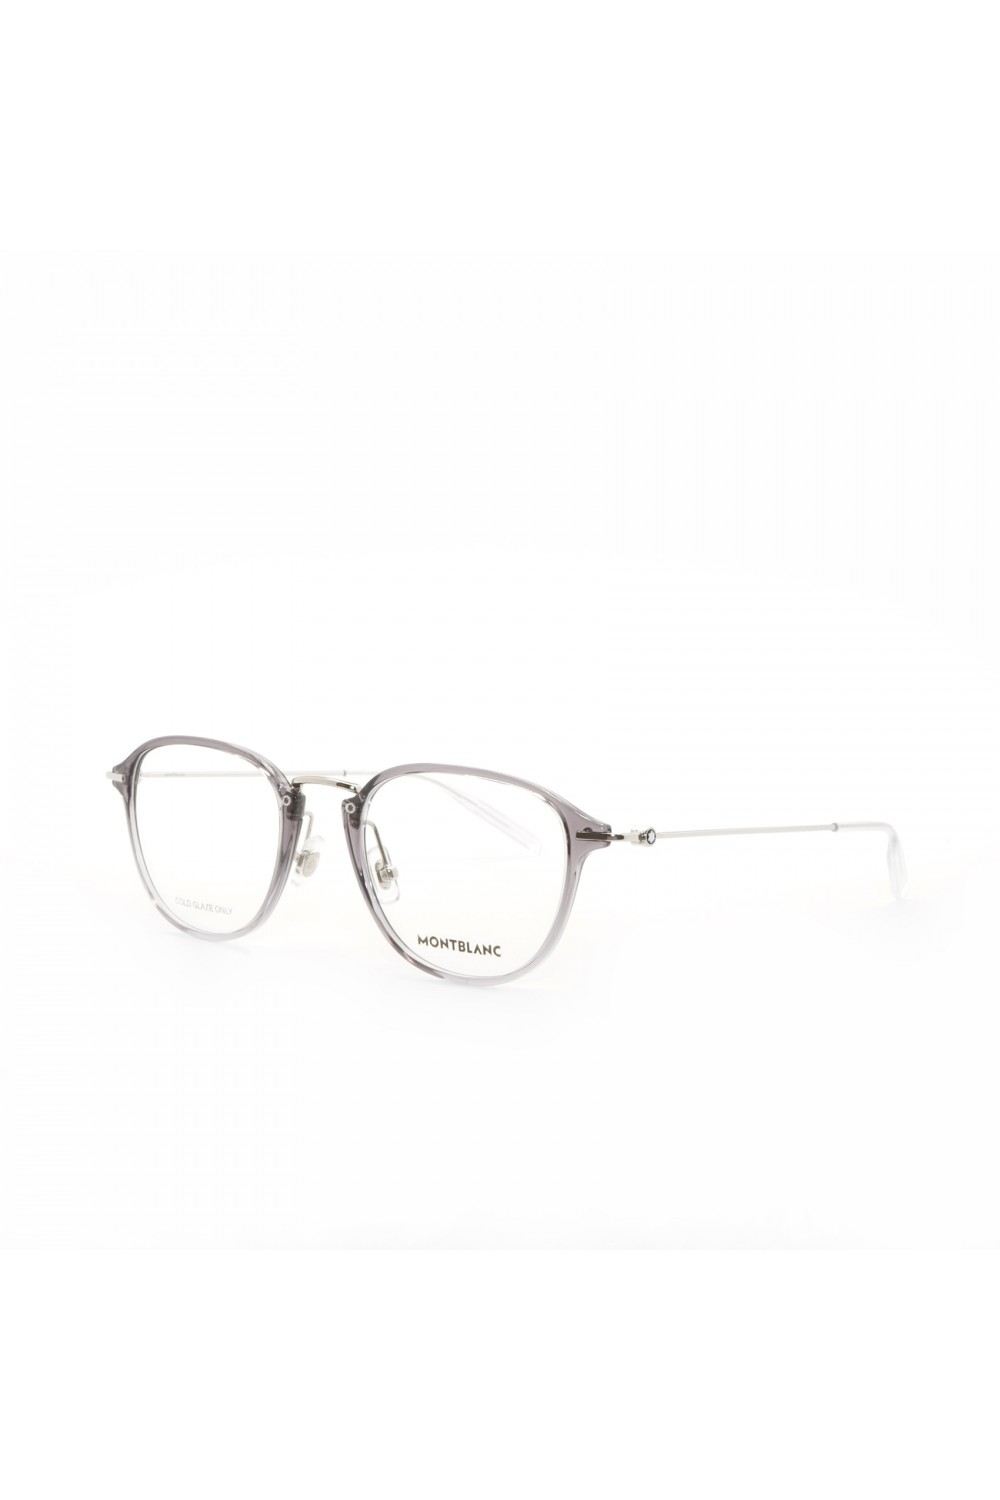 Montblanc - Occhiali da vista combinati squadrati per uomo grigio, tartarugato